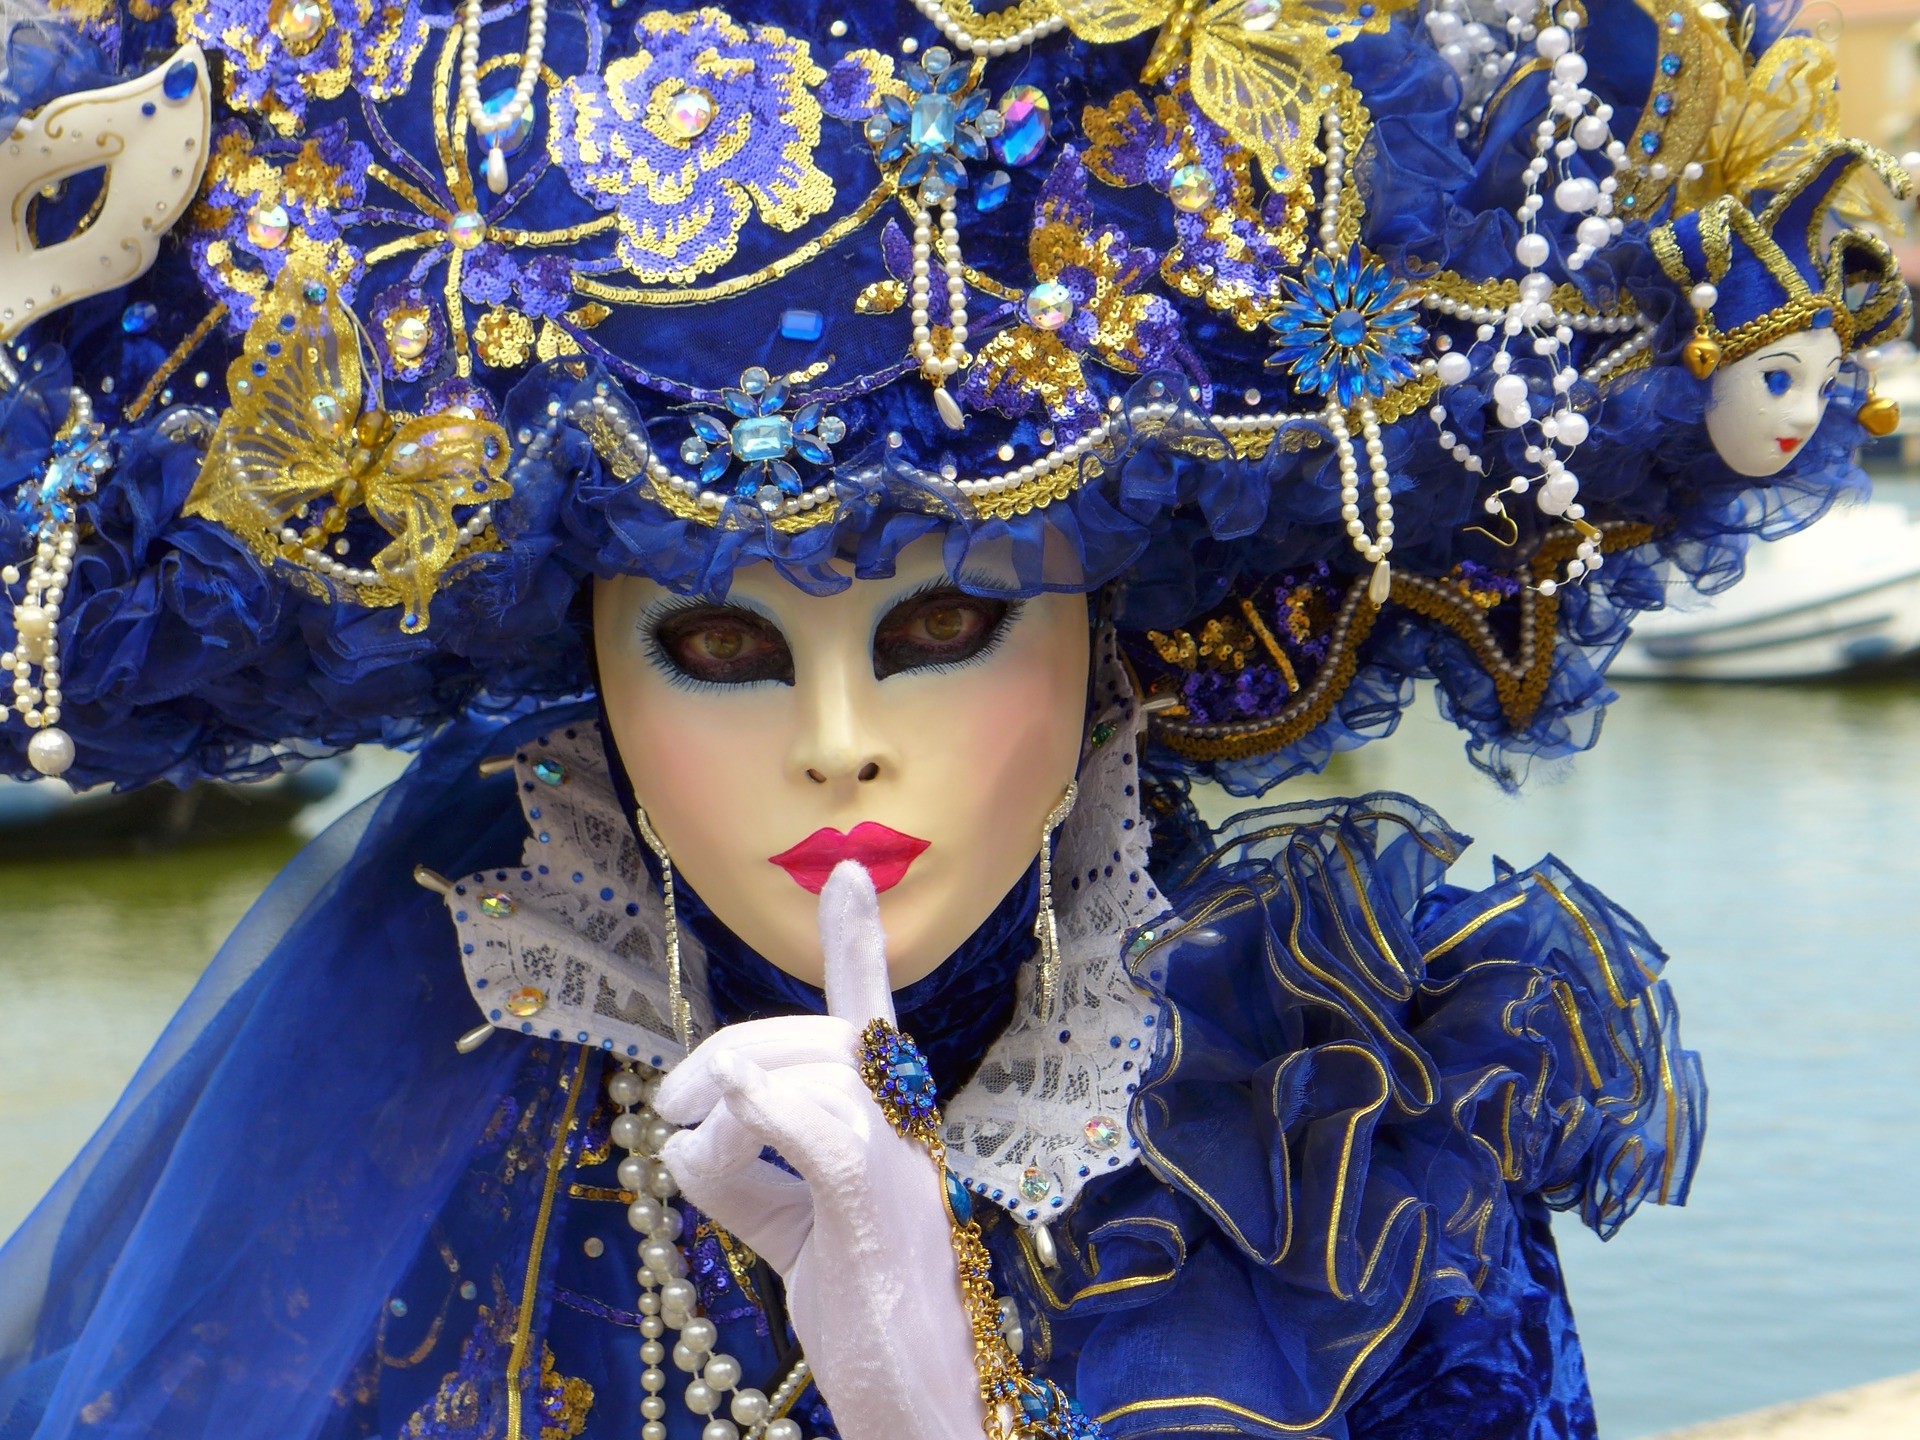 El origen de las máscaras del Carnaval de Venecia